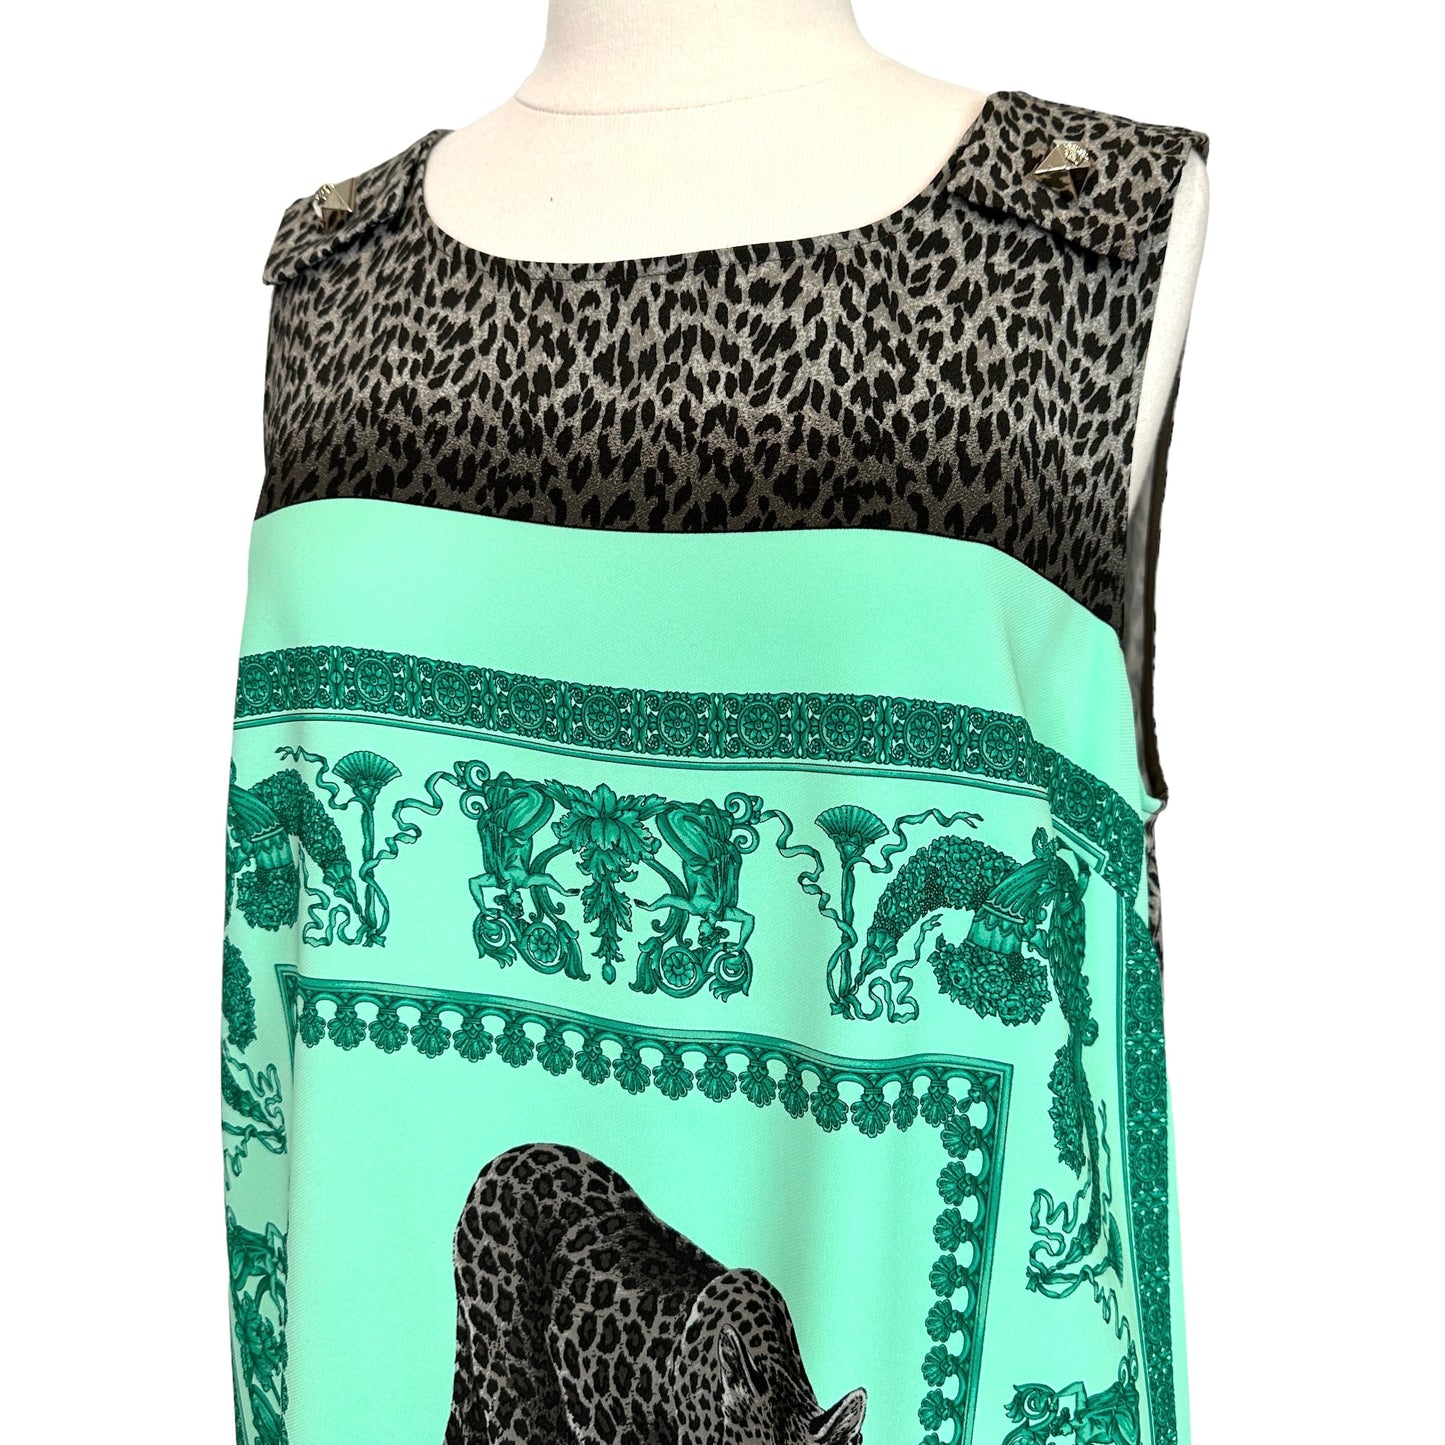 Leopard Print Dress - L